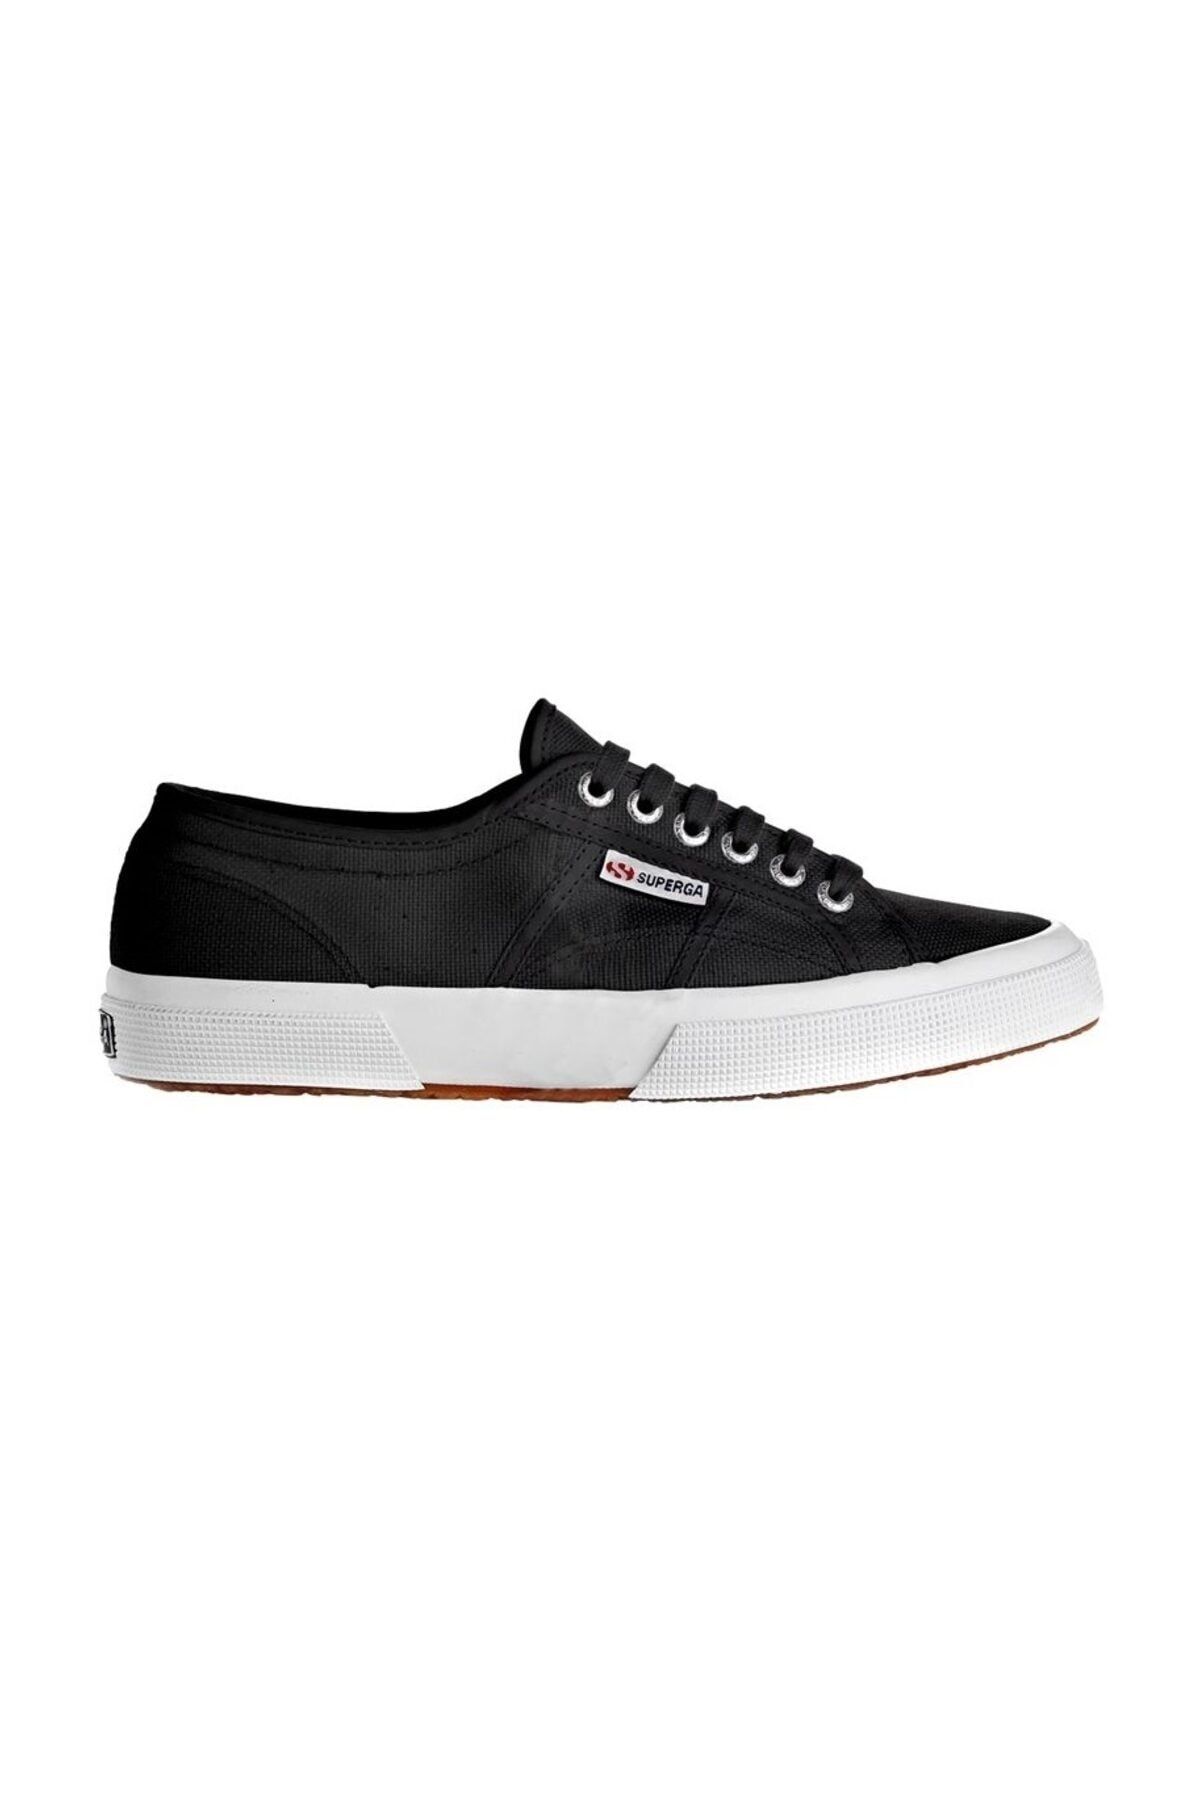 Unisex Siyah - Beyaz Spor Ayakkabı -  2750-Cotu Classic - S000010 - F83